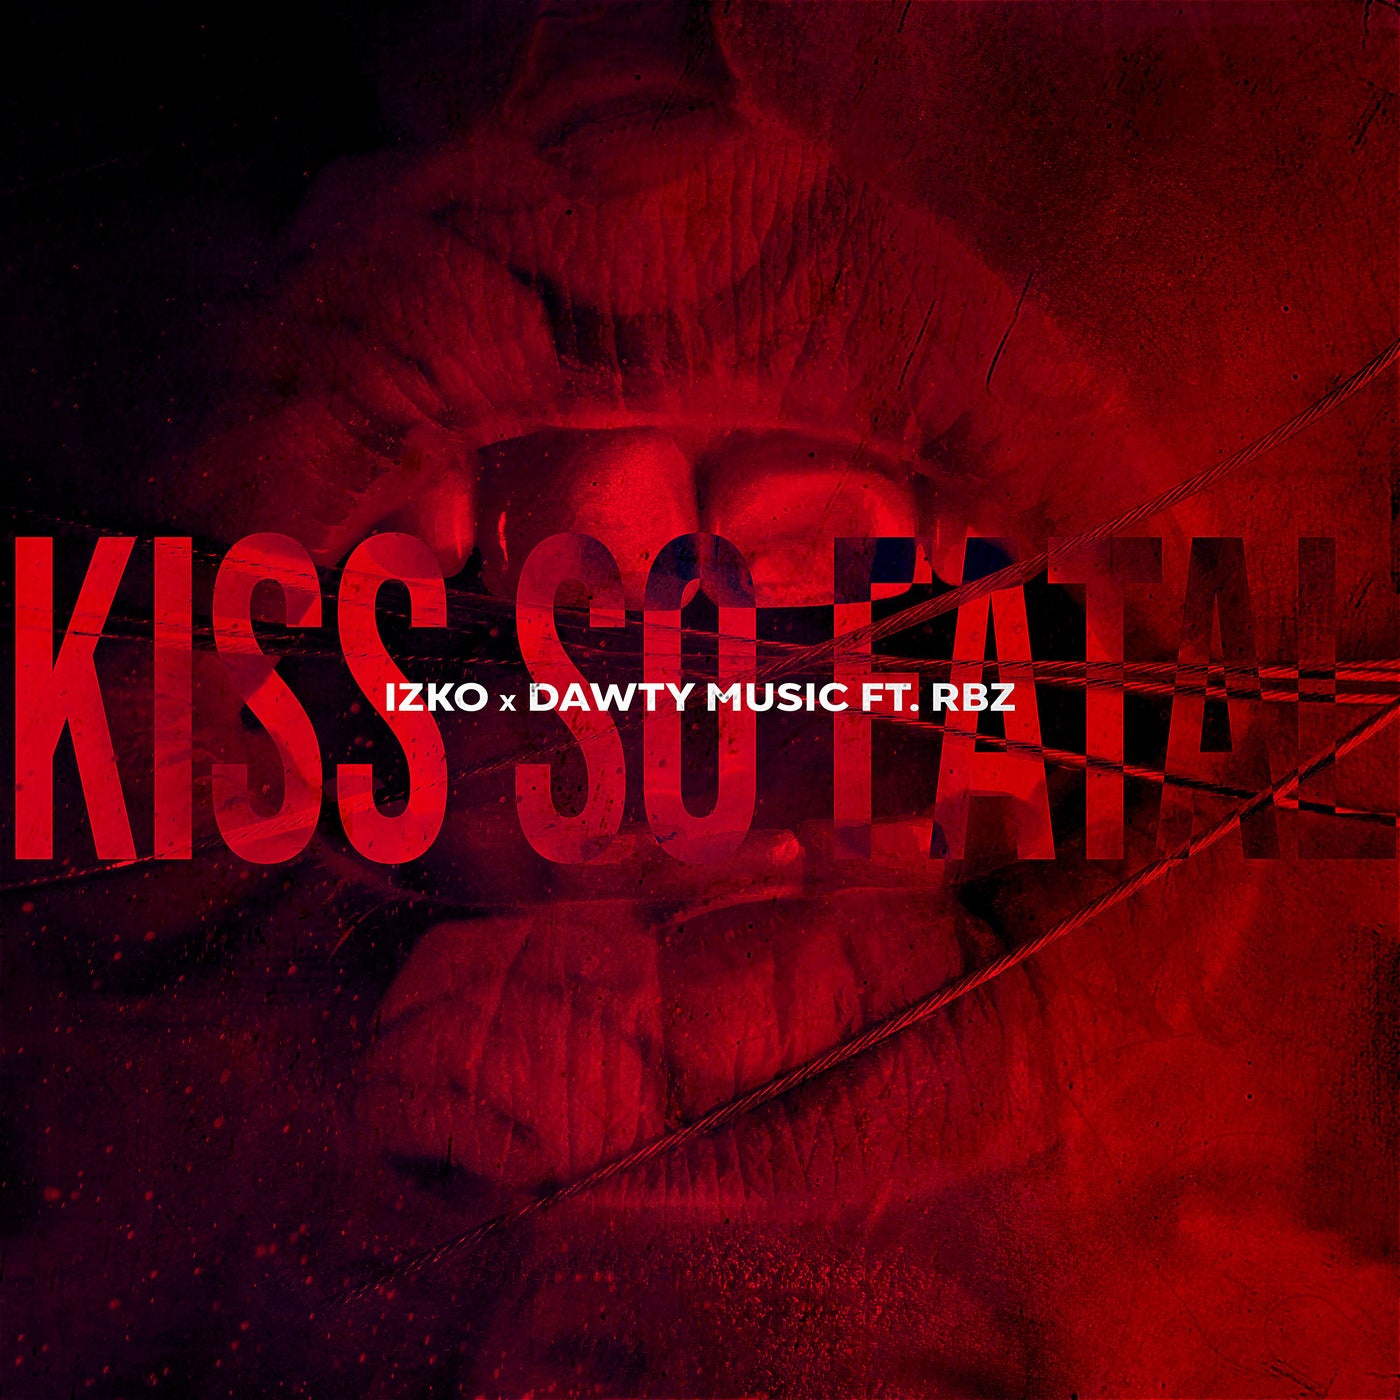 Kiss So Fatal